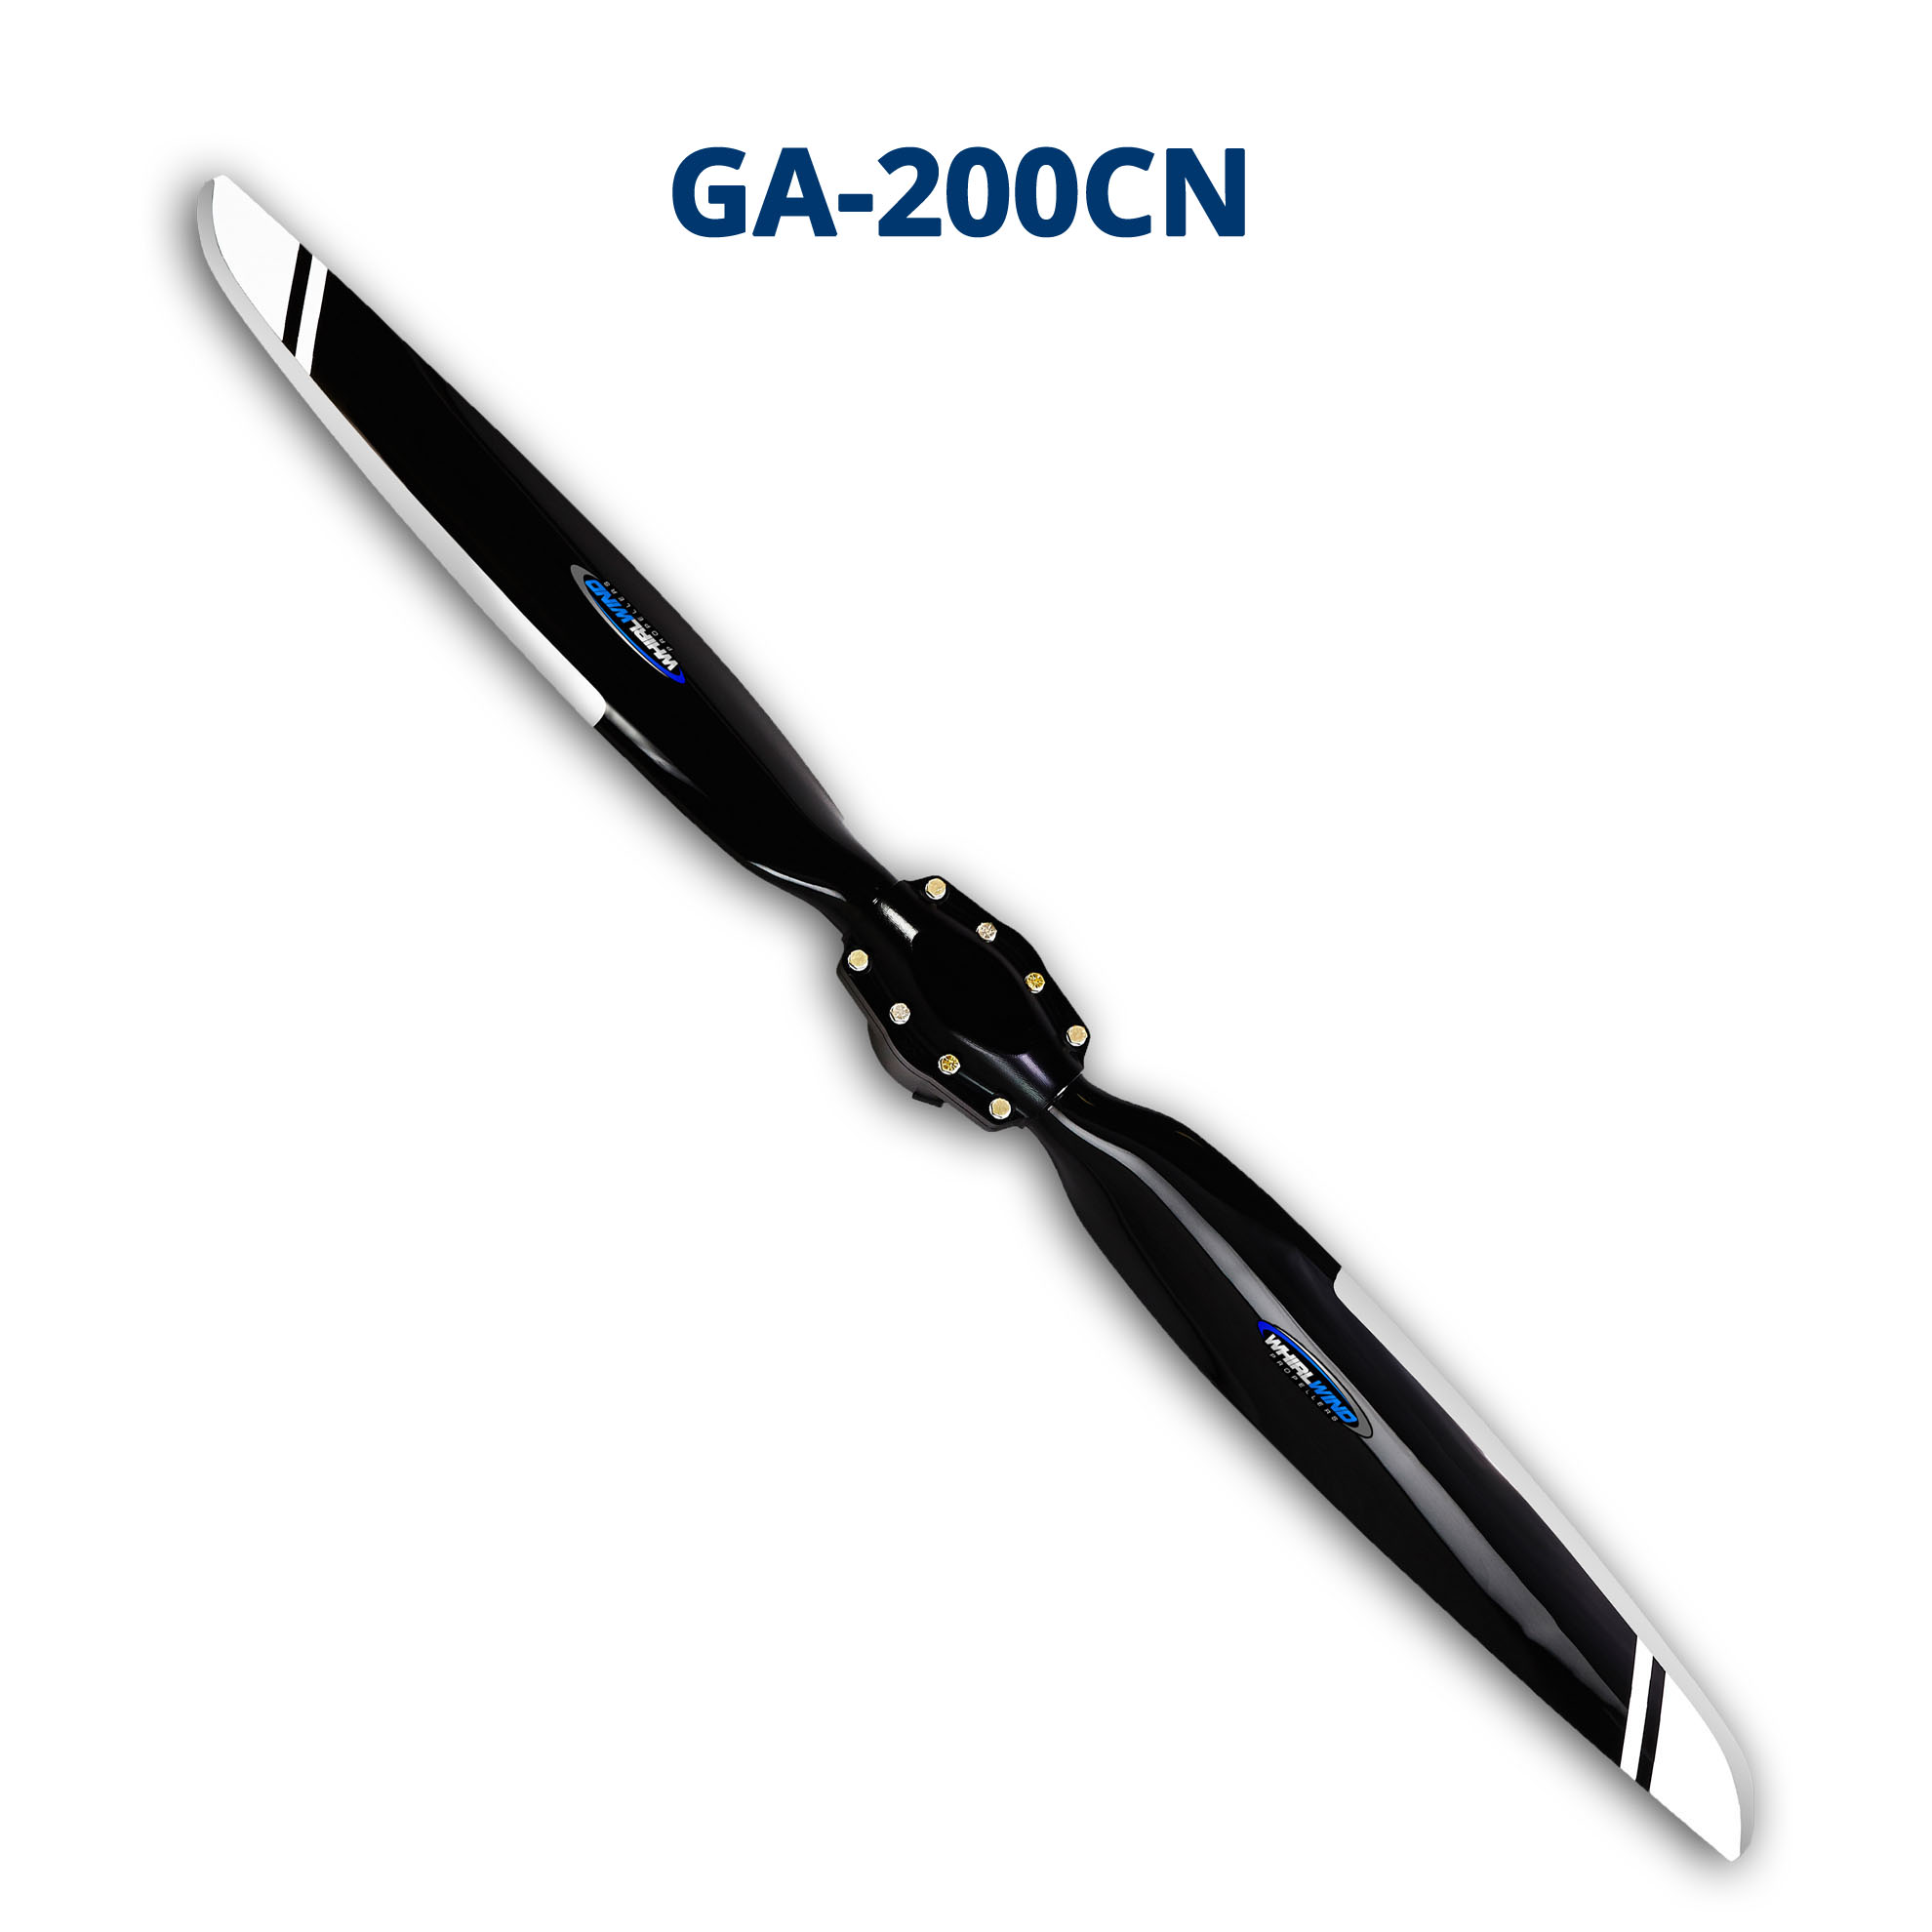 GA-200CN Propeller